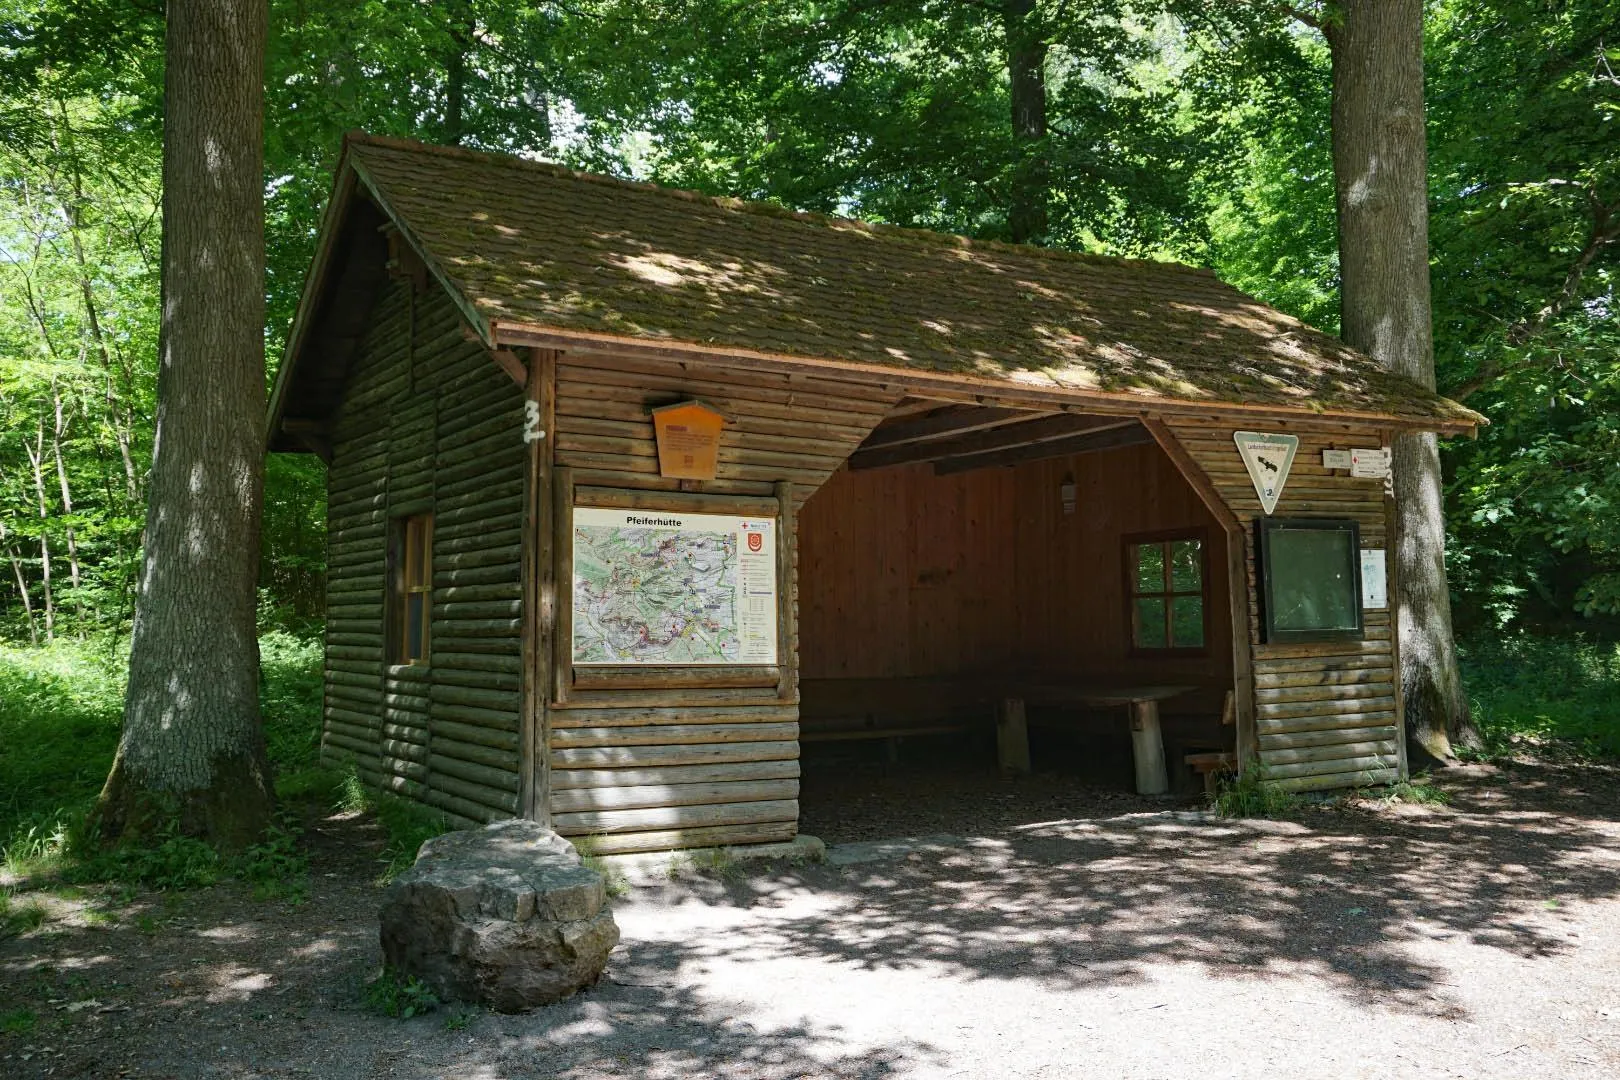 Photo showing: Die Pfeiferhütte wurde 1583 erstmals erwähnt und geht auf den Forstmeister Caspar Pfeifer zurück, der die Hütte zum Schutz der Jagdgäste und Waldarbeiter errichten ließ. Die heutige Hütte stammt aus dem Jahr 1953.
In der Nähe befindet sich ein Picknick- und Grillplatz.